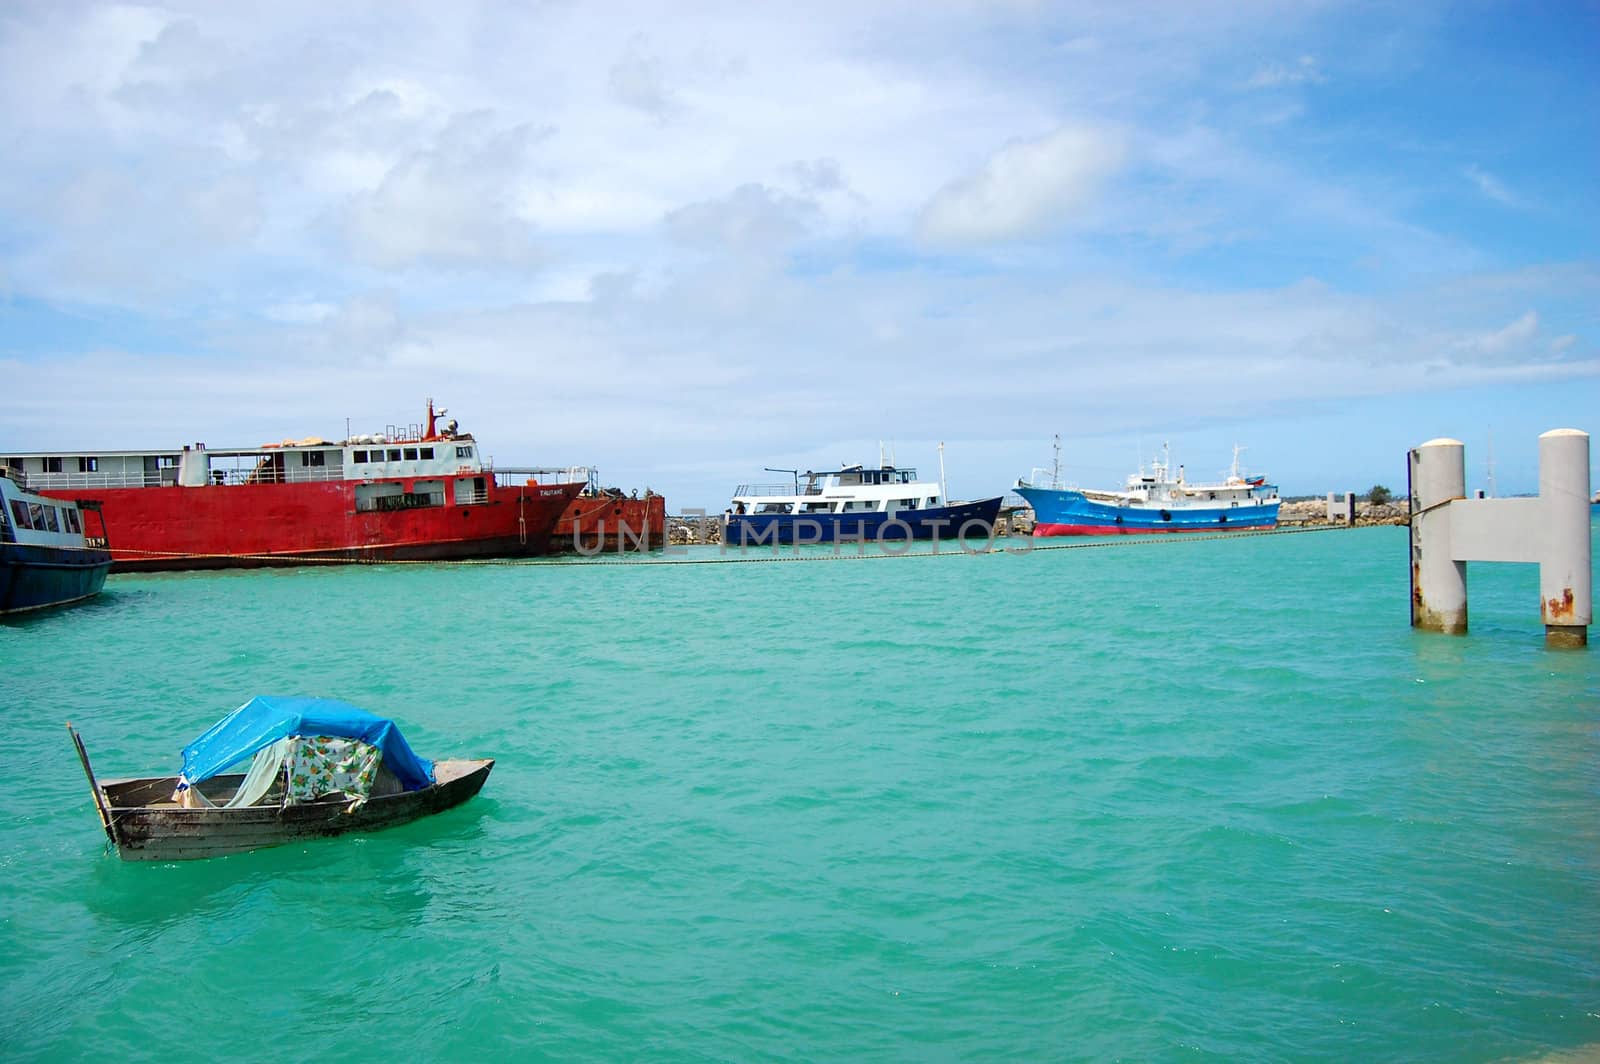 Boat and ships at port, South Pacific, Tonga